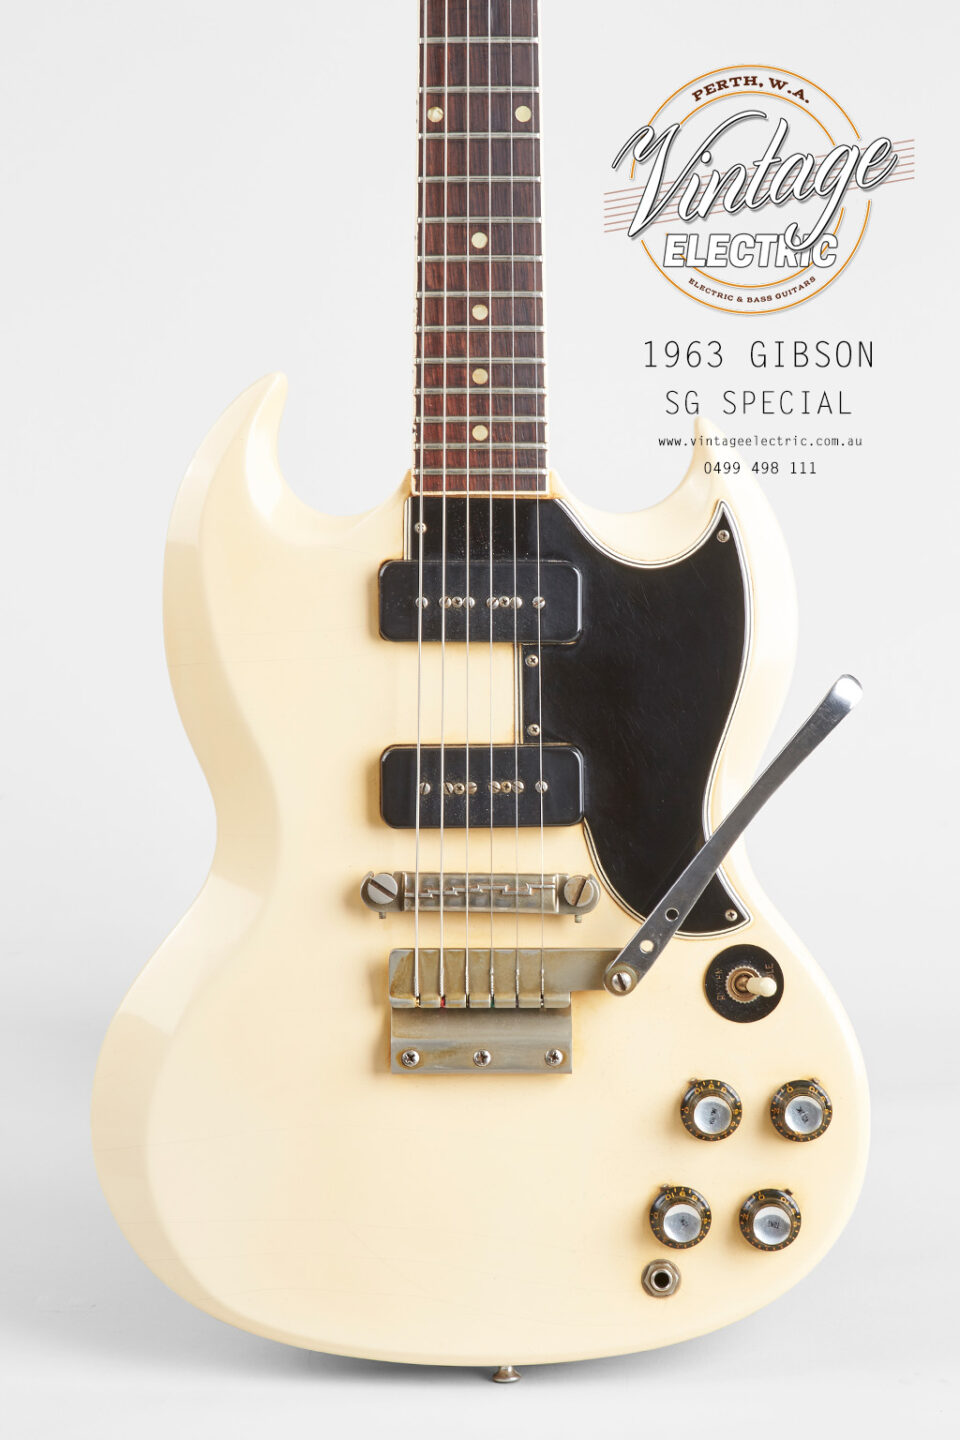 1963 Gibson SG Special Body